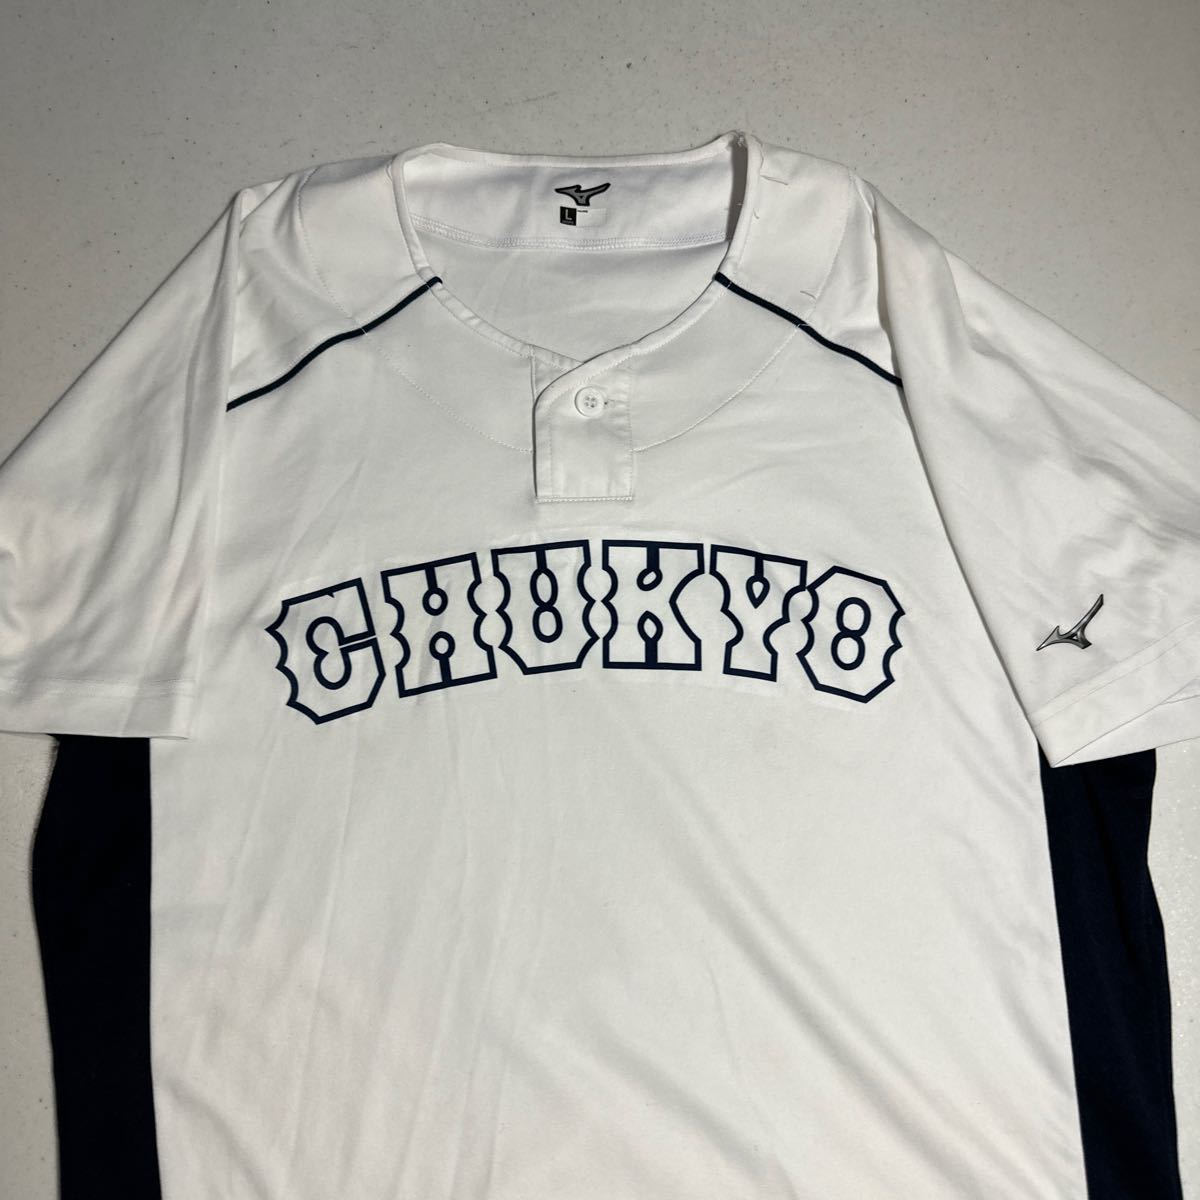 中京 野球部 支給 着用 ミズノ MIZUNO ユニフォーム プラクティスシャツ Lサイズ_画像2